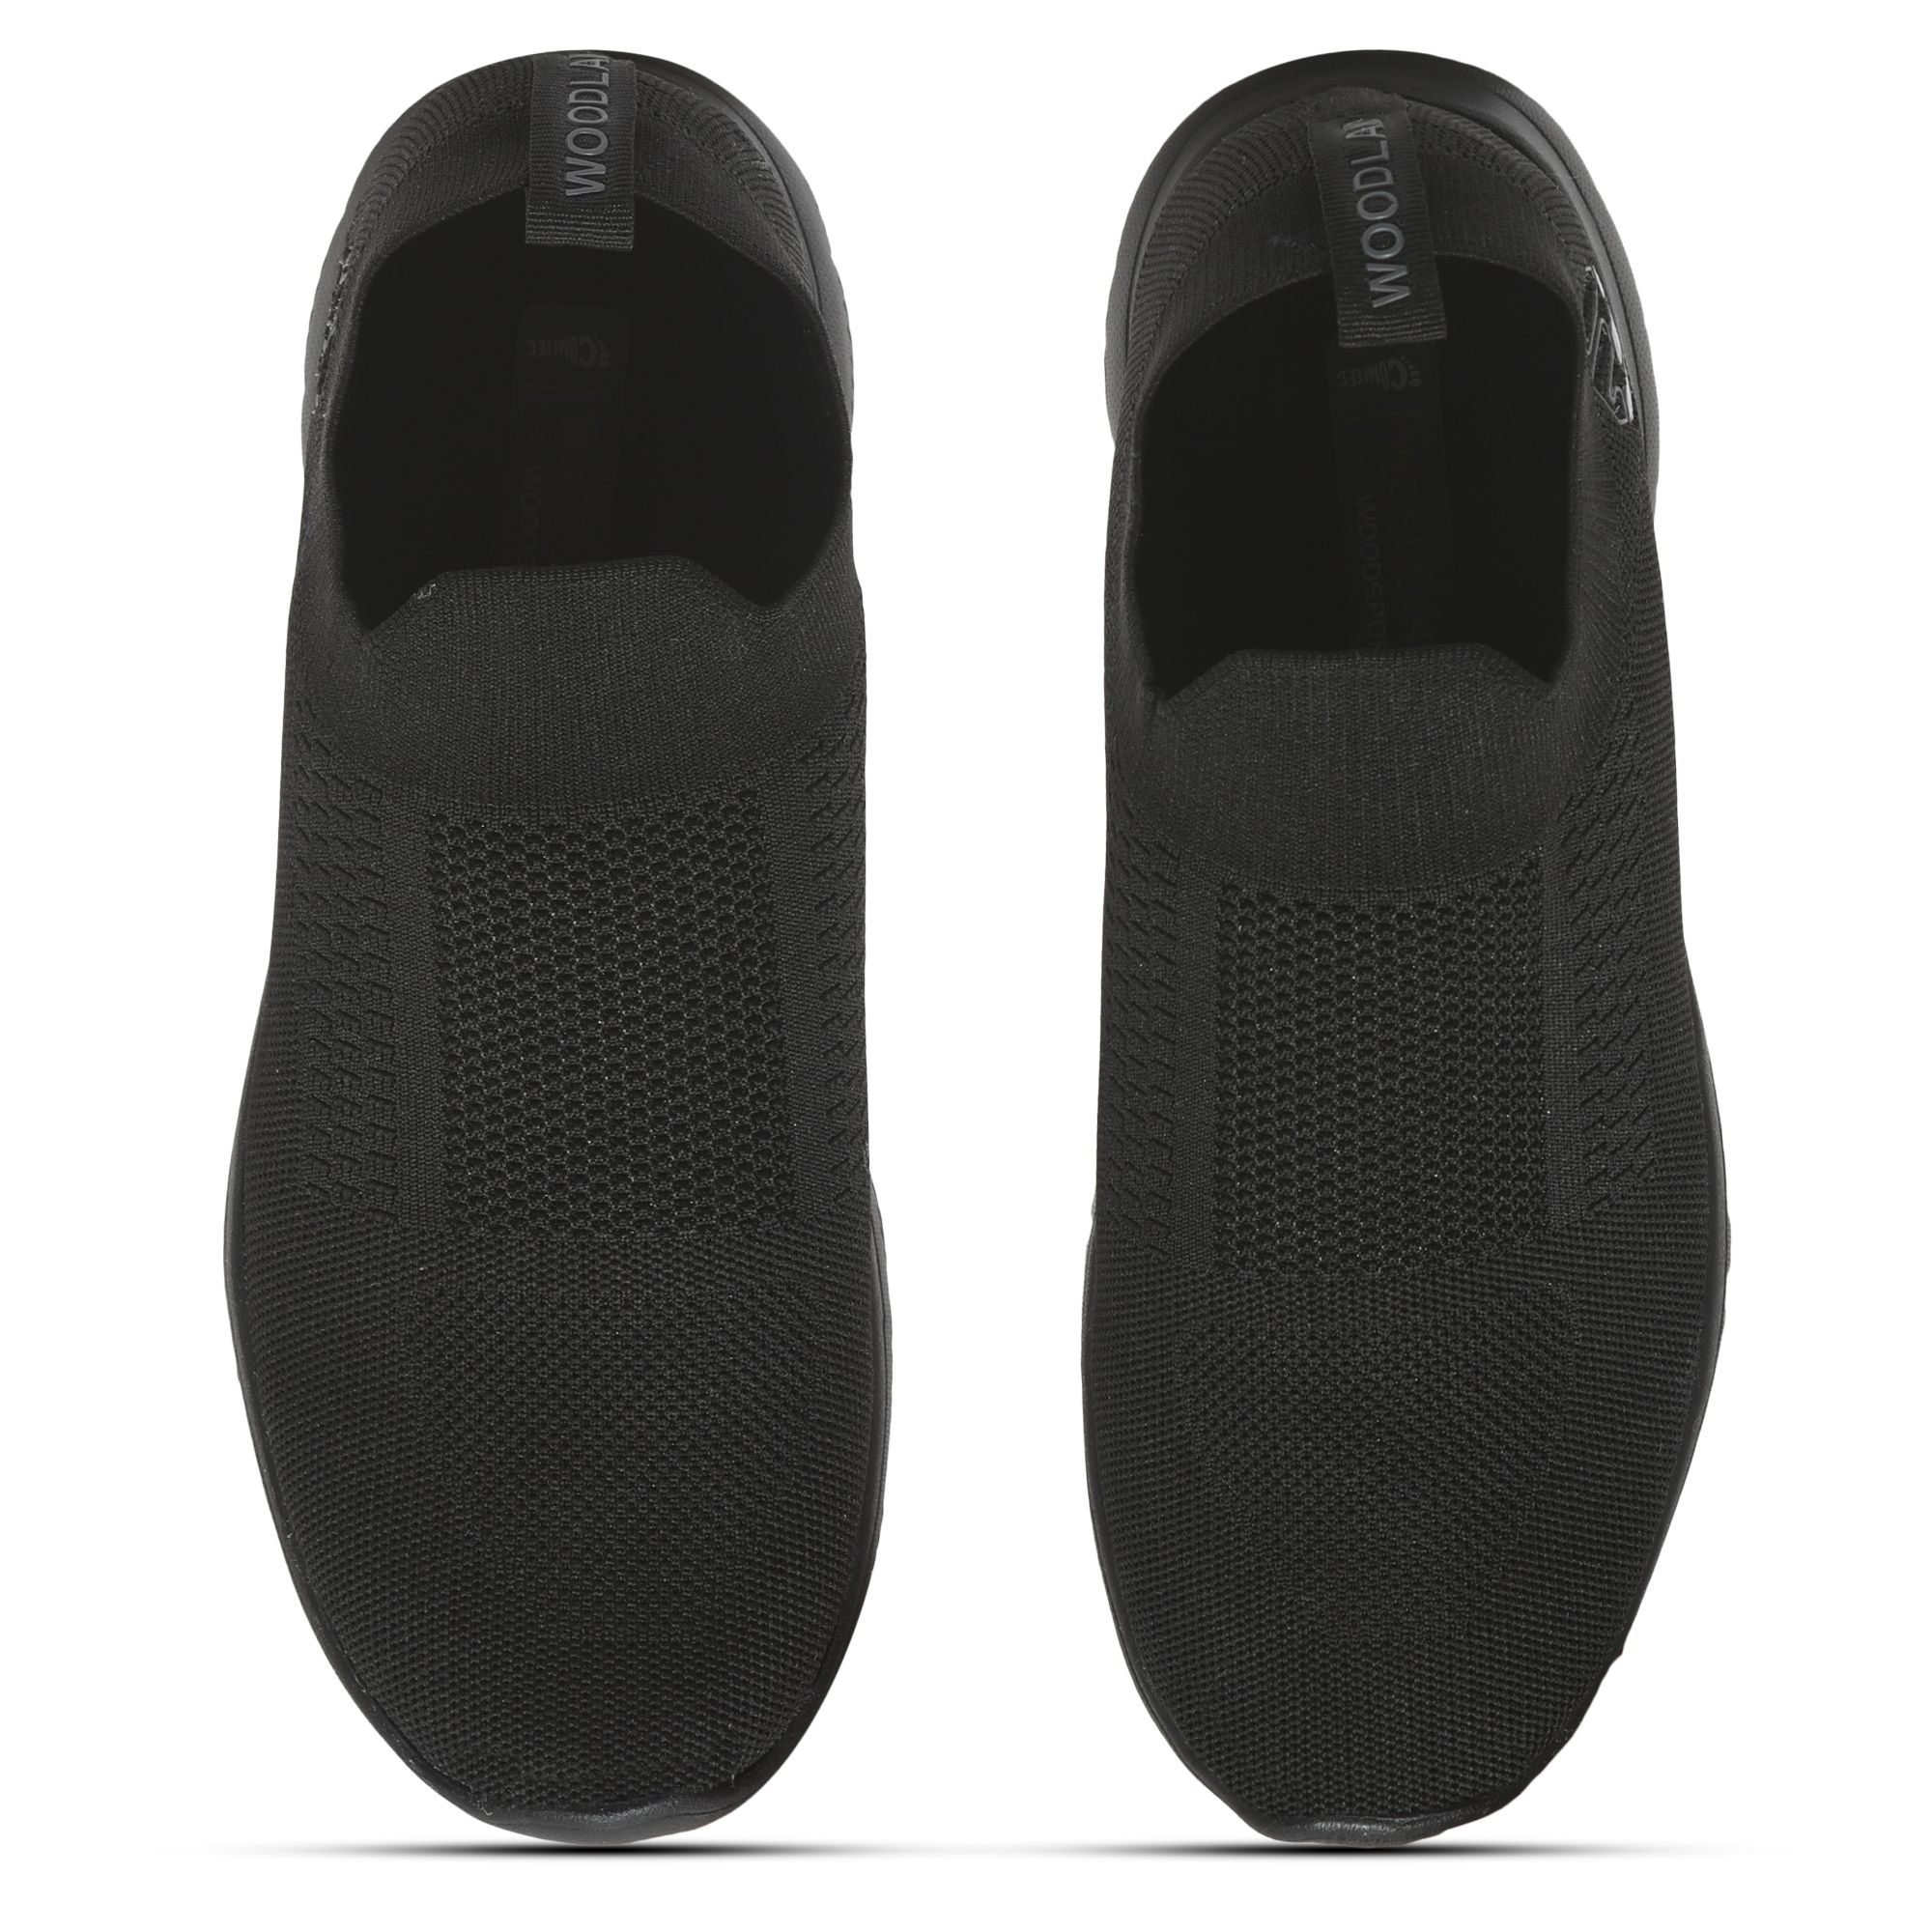 Black slip-on shoe for men